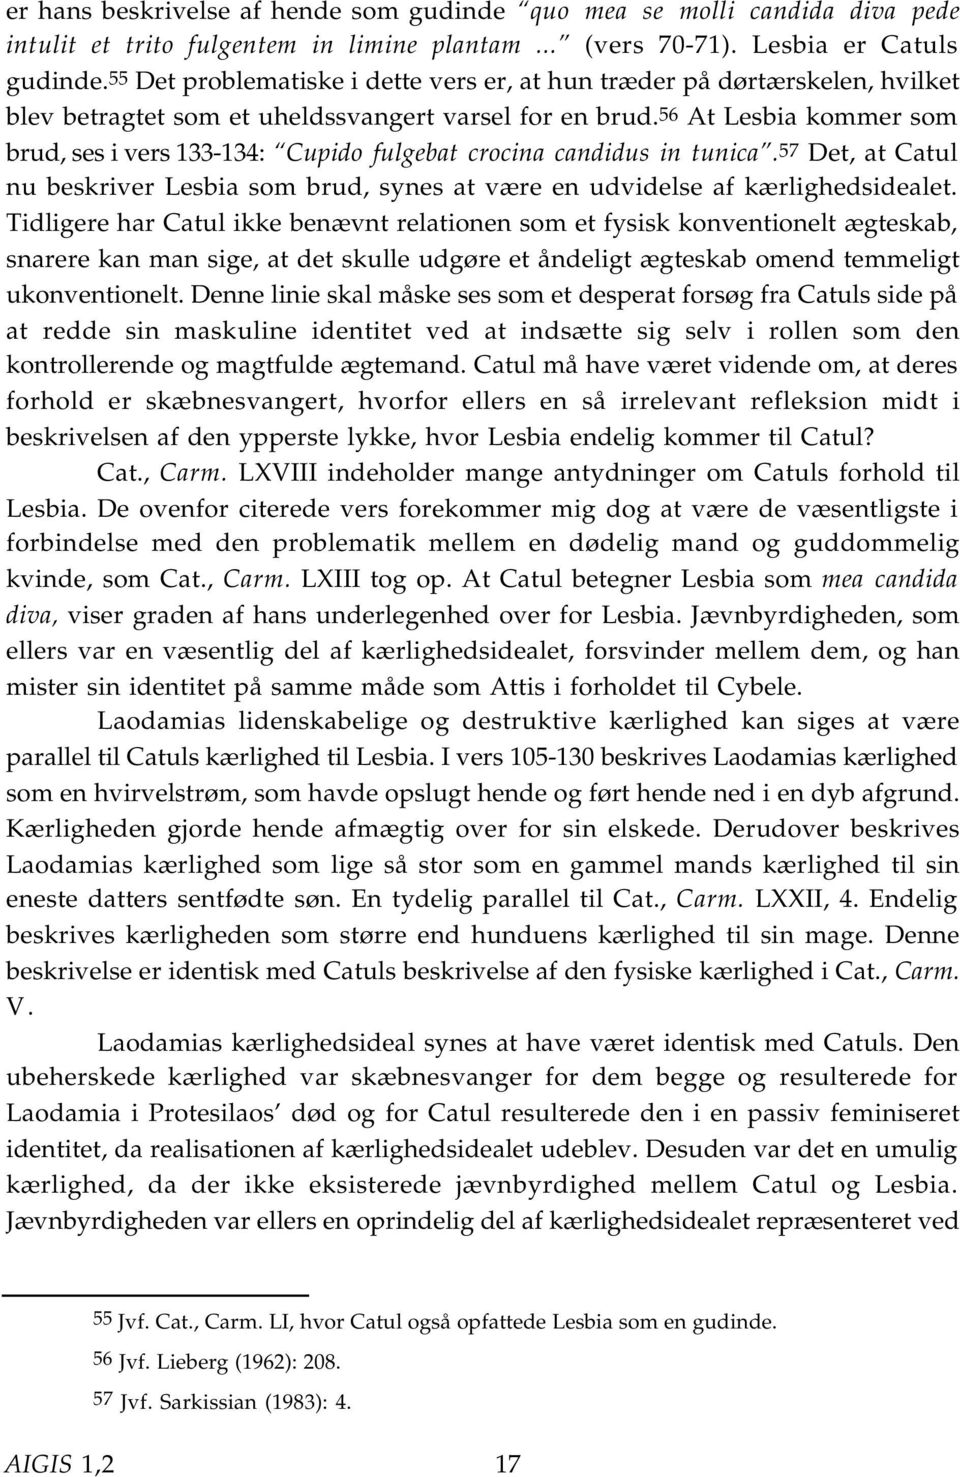 56 At Lesbia kommer som brud, ses i vers 133-134: Cupido fulgebat crocina candidus in tunica.57 Det, at Catul nu beskriver Lesbia som brud, synes at være en udvidelse af kærlighedsidealet.